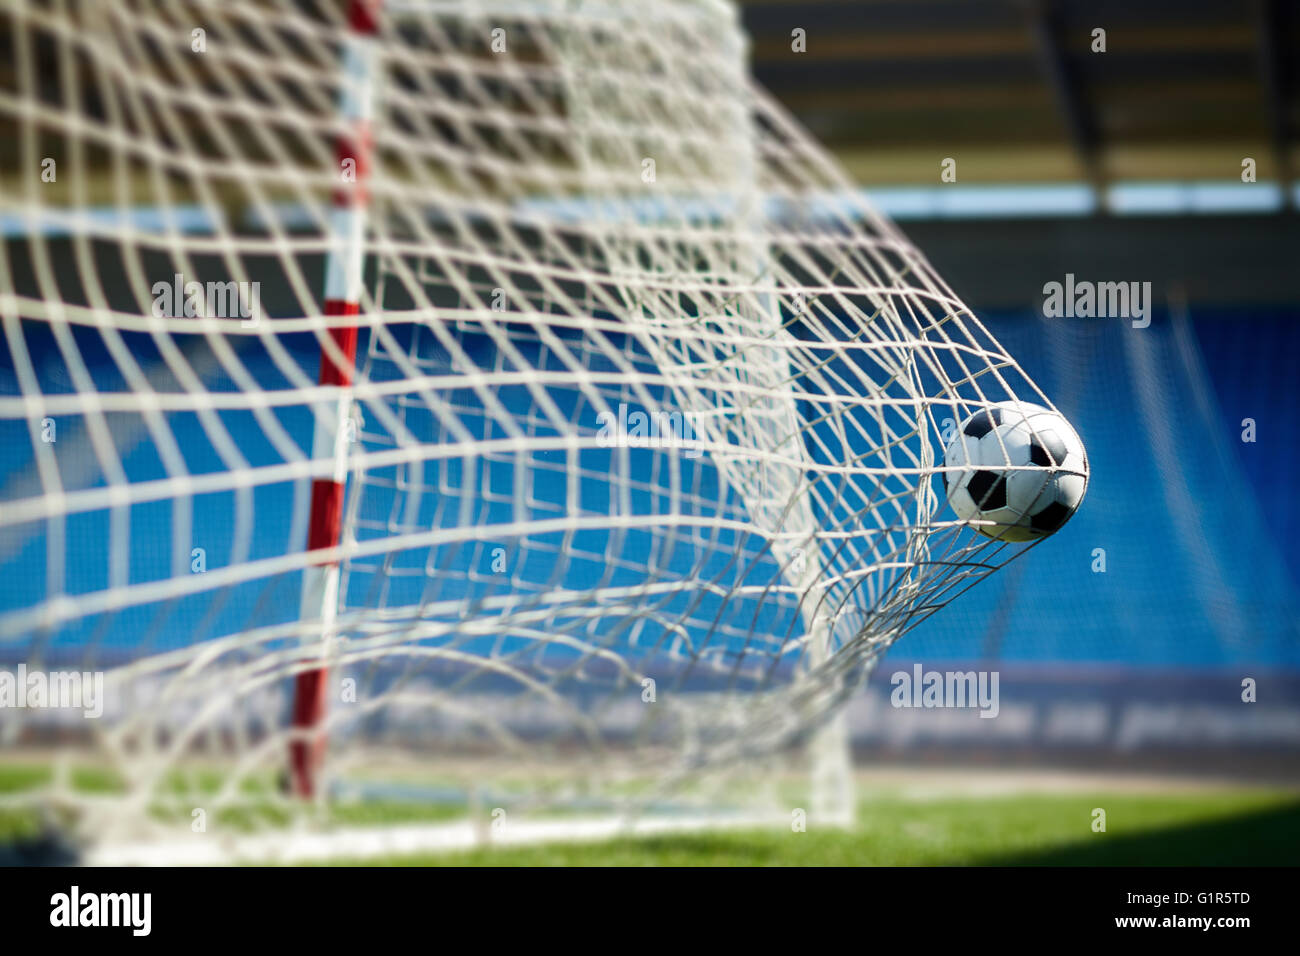 Soccer goal Stock Photo